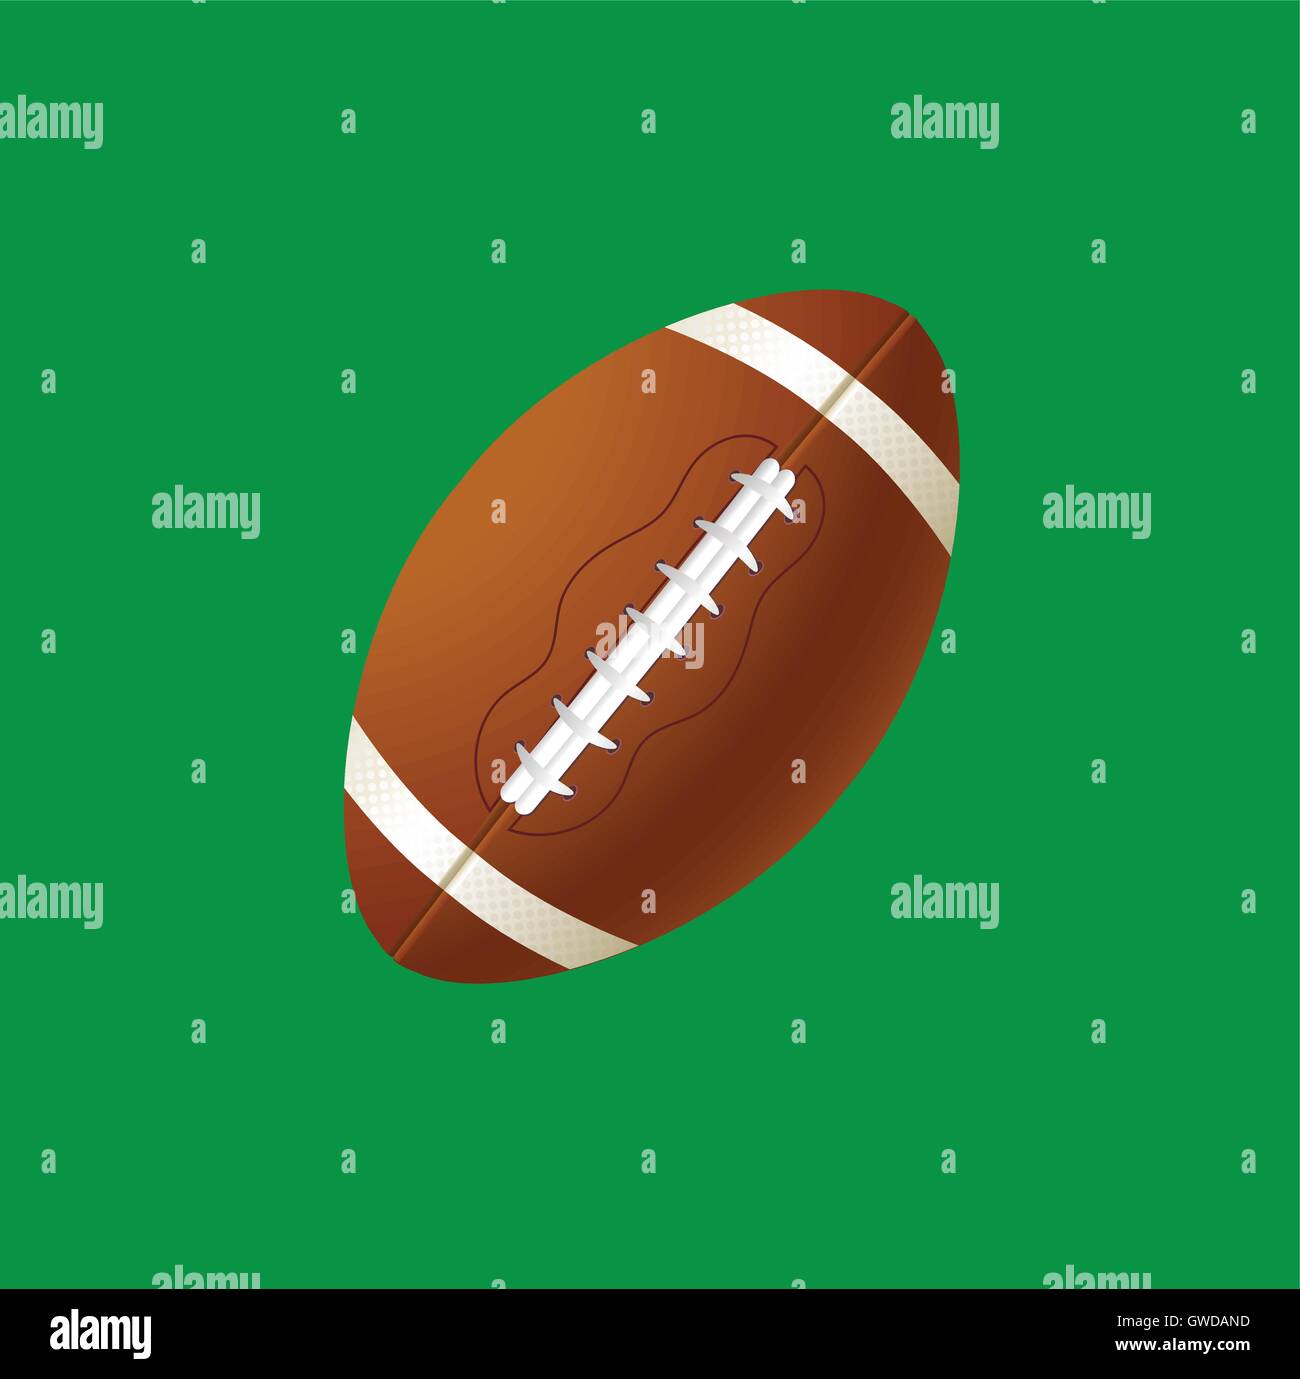 Ilustración vectorial del deporte balón de fútbol americano Ilustración del Vector